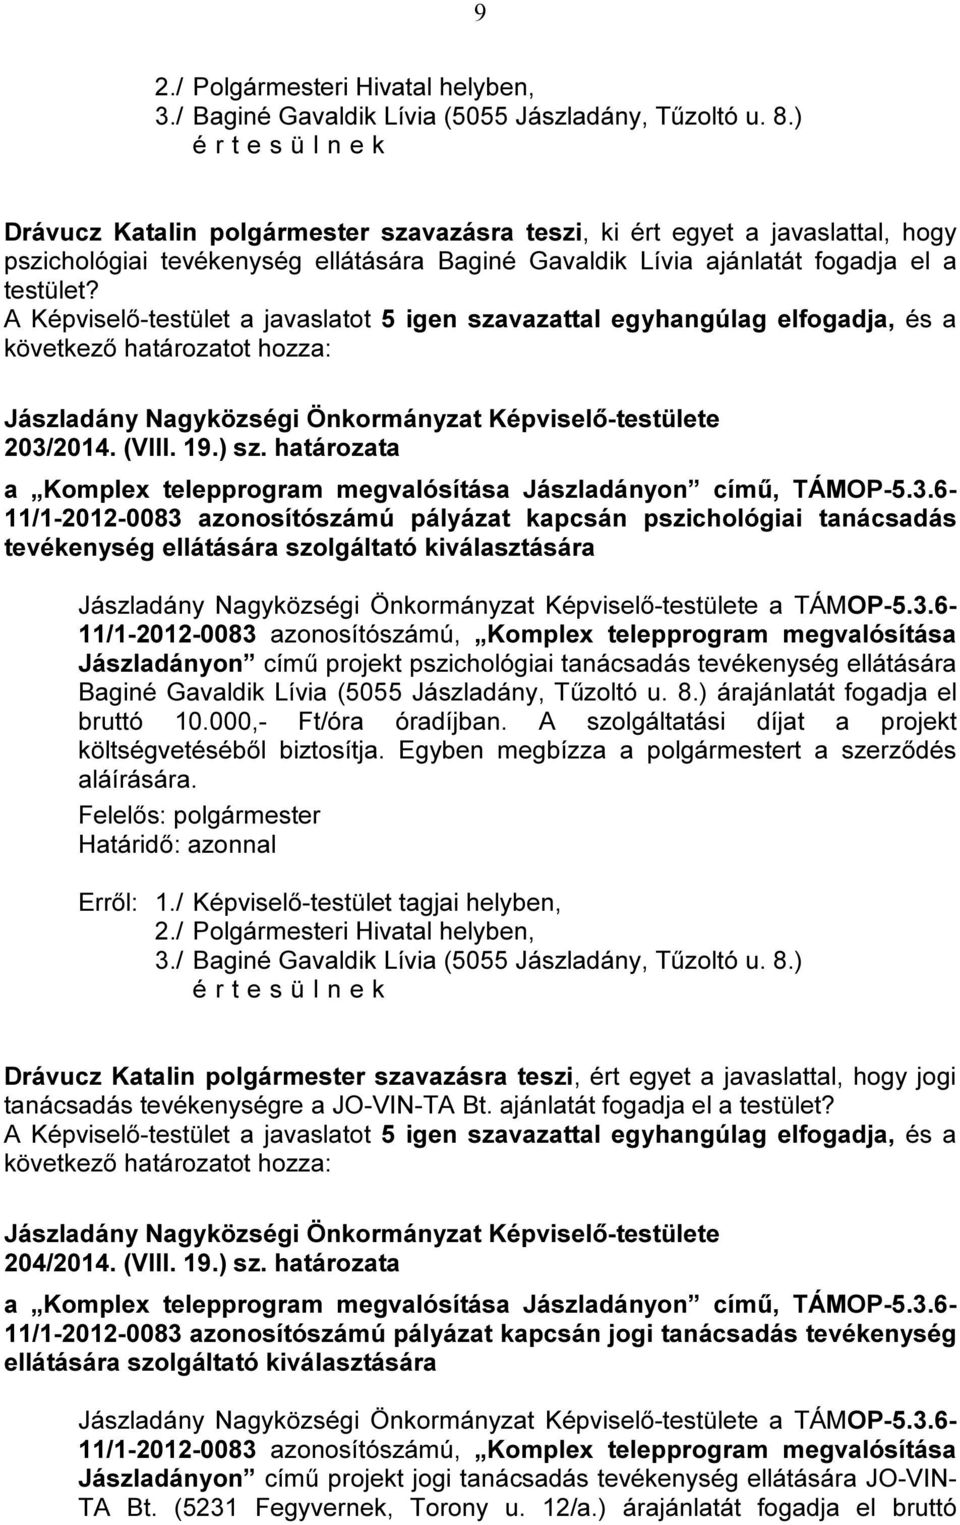 határozata a Komplex telepprogram megvalósítása Jászladányon című, TÁMOP-5.3.